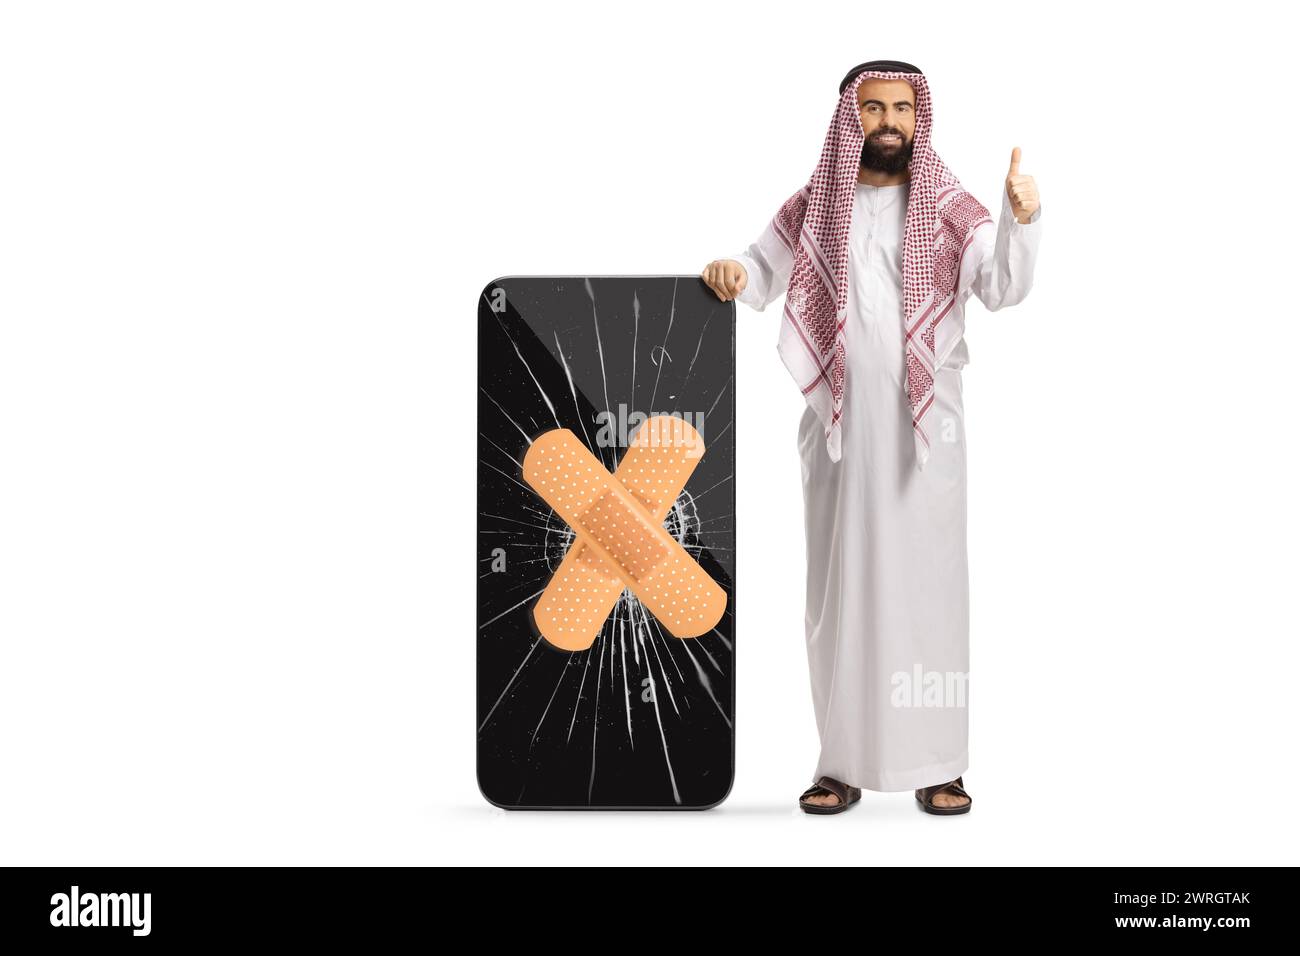 Uomo arabo saudita in abiti etnici che gestiva i pollici in alto e in piedi accanto a un telefono cellulare con schermo incrinato isolato su sfondo bianco Foto Stock